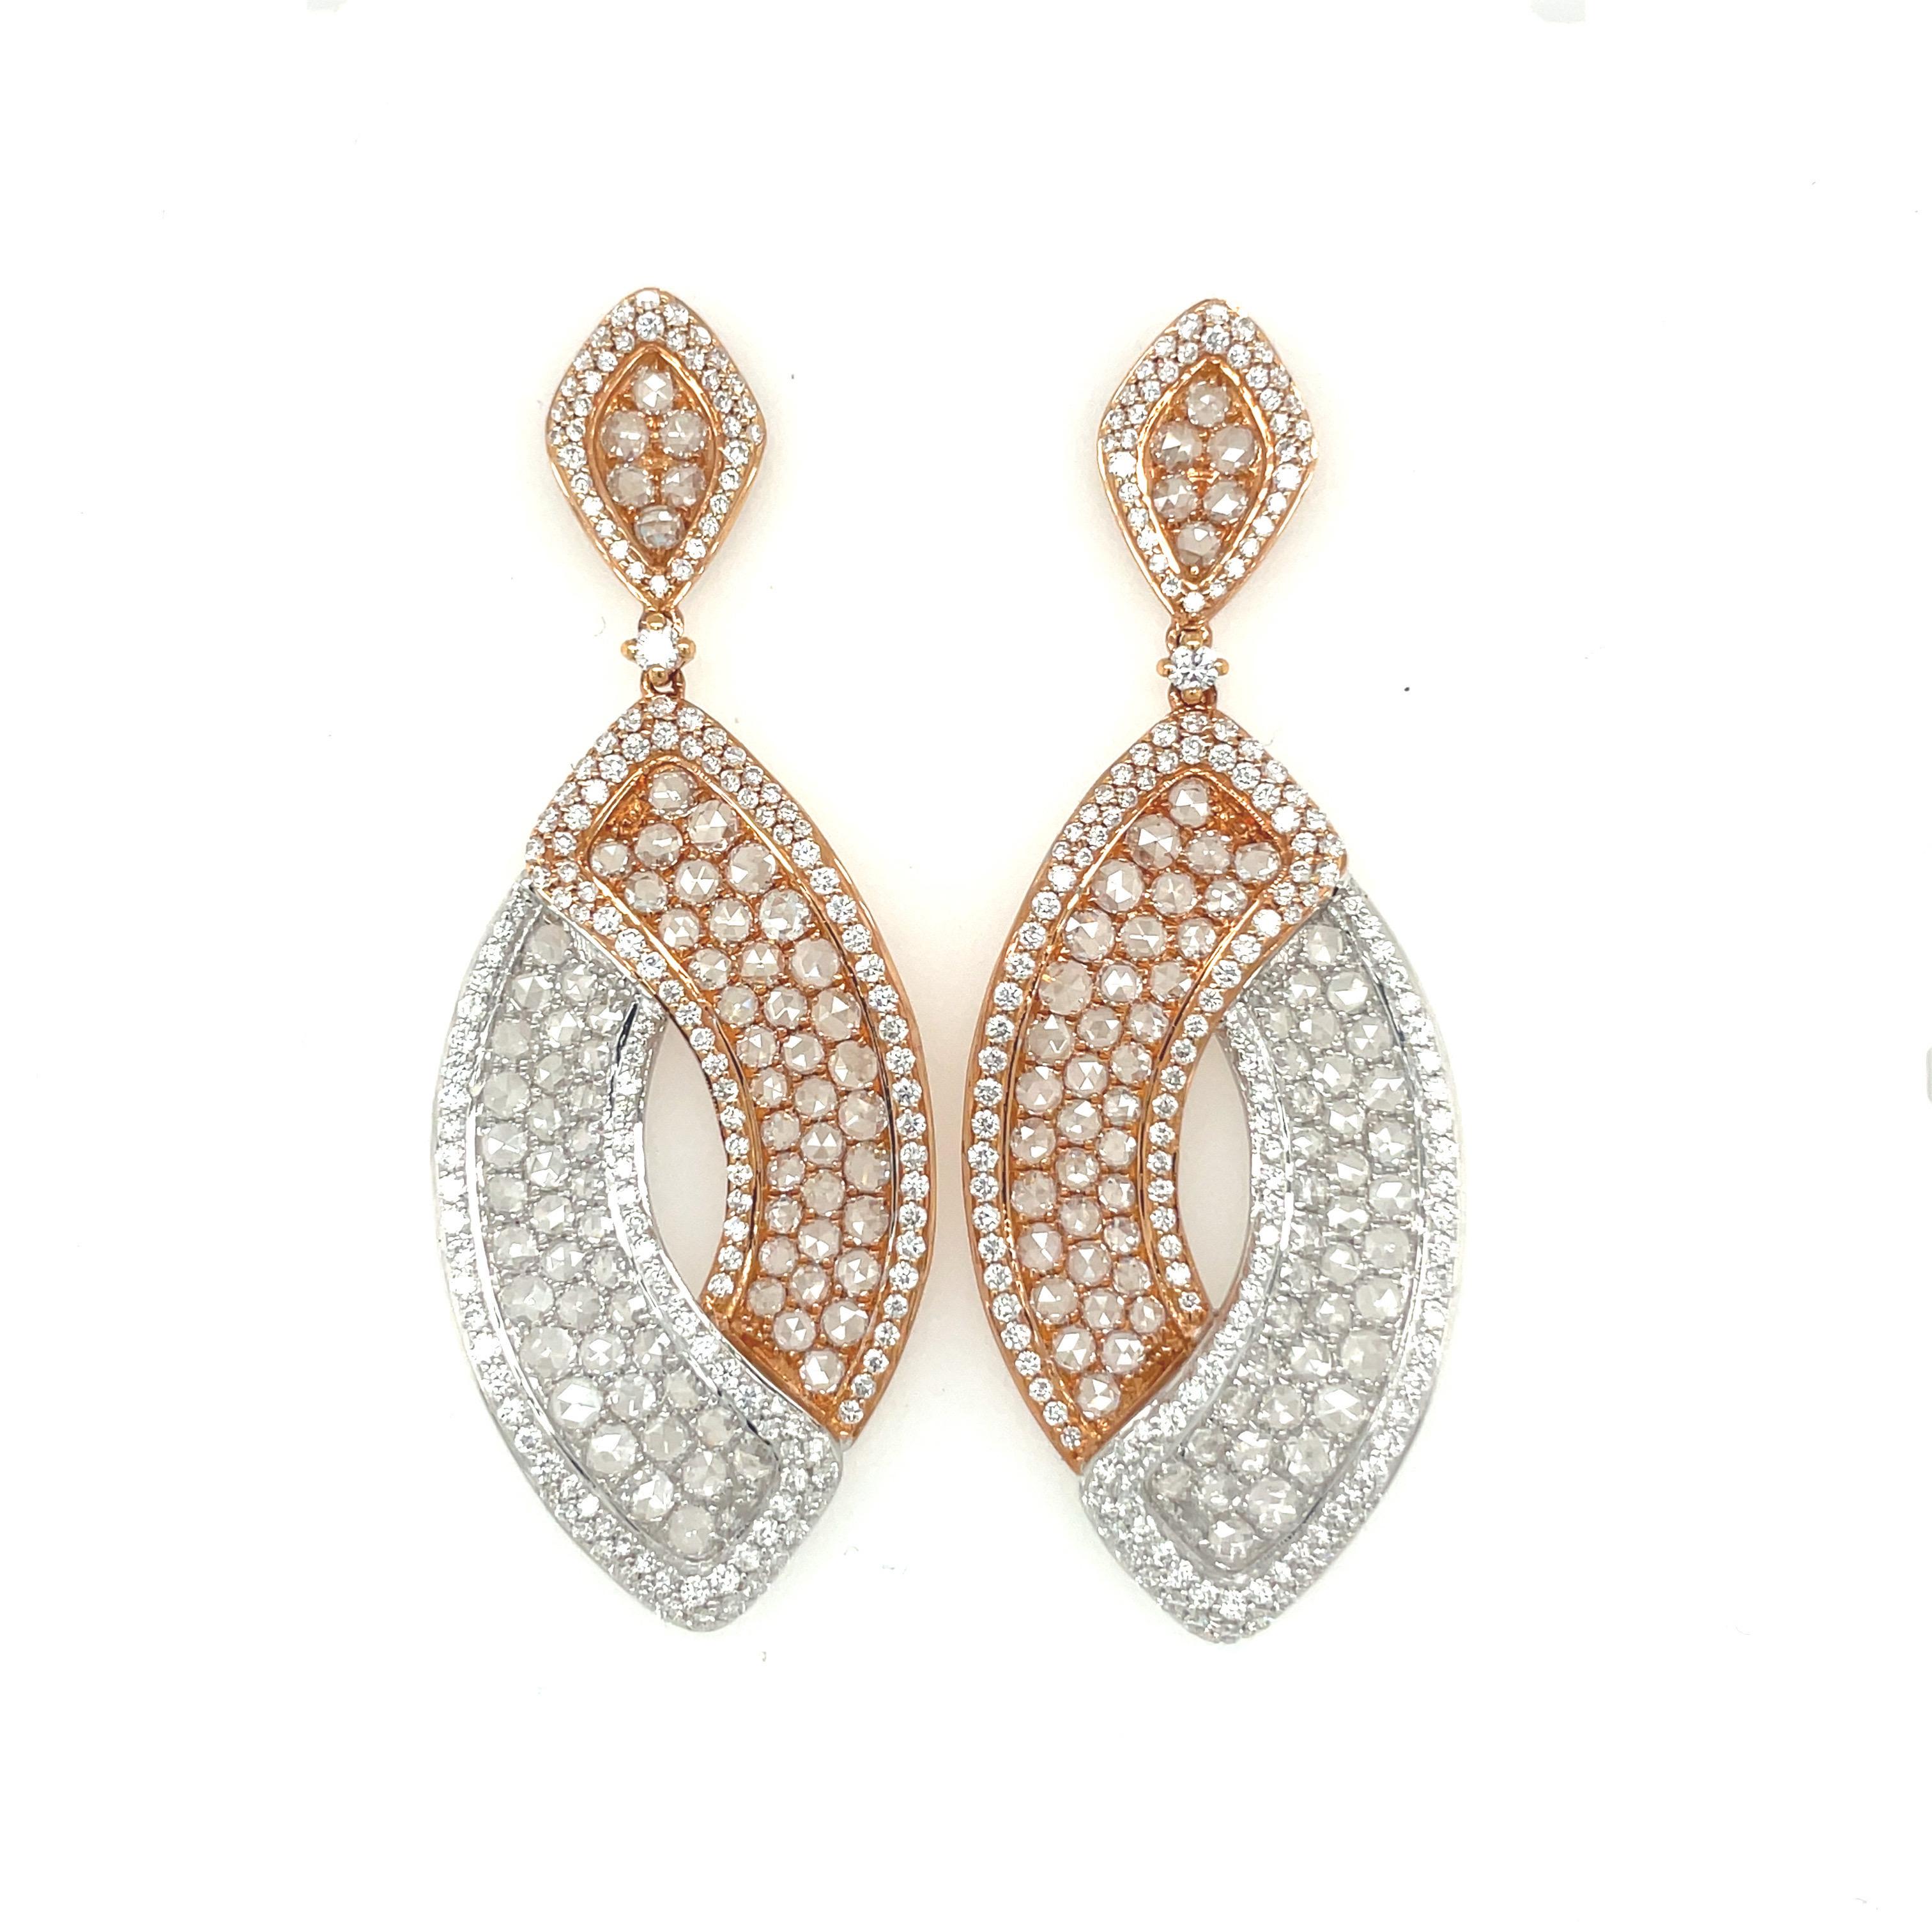 Diese wunderschönen und vielseitigen Ohrringe aus 18 Karat Rosé- und Weißgold bestehen aus 2,30 Karat runden Diamanten, die 3,94 Karat Diamanten im Rosenschliff umgeben.
Das Funkeln der Diamanten wird durch die Kombination von Diamantschliffen sowie